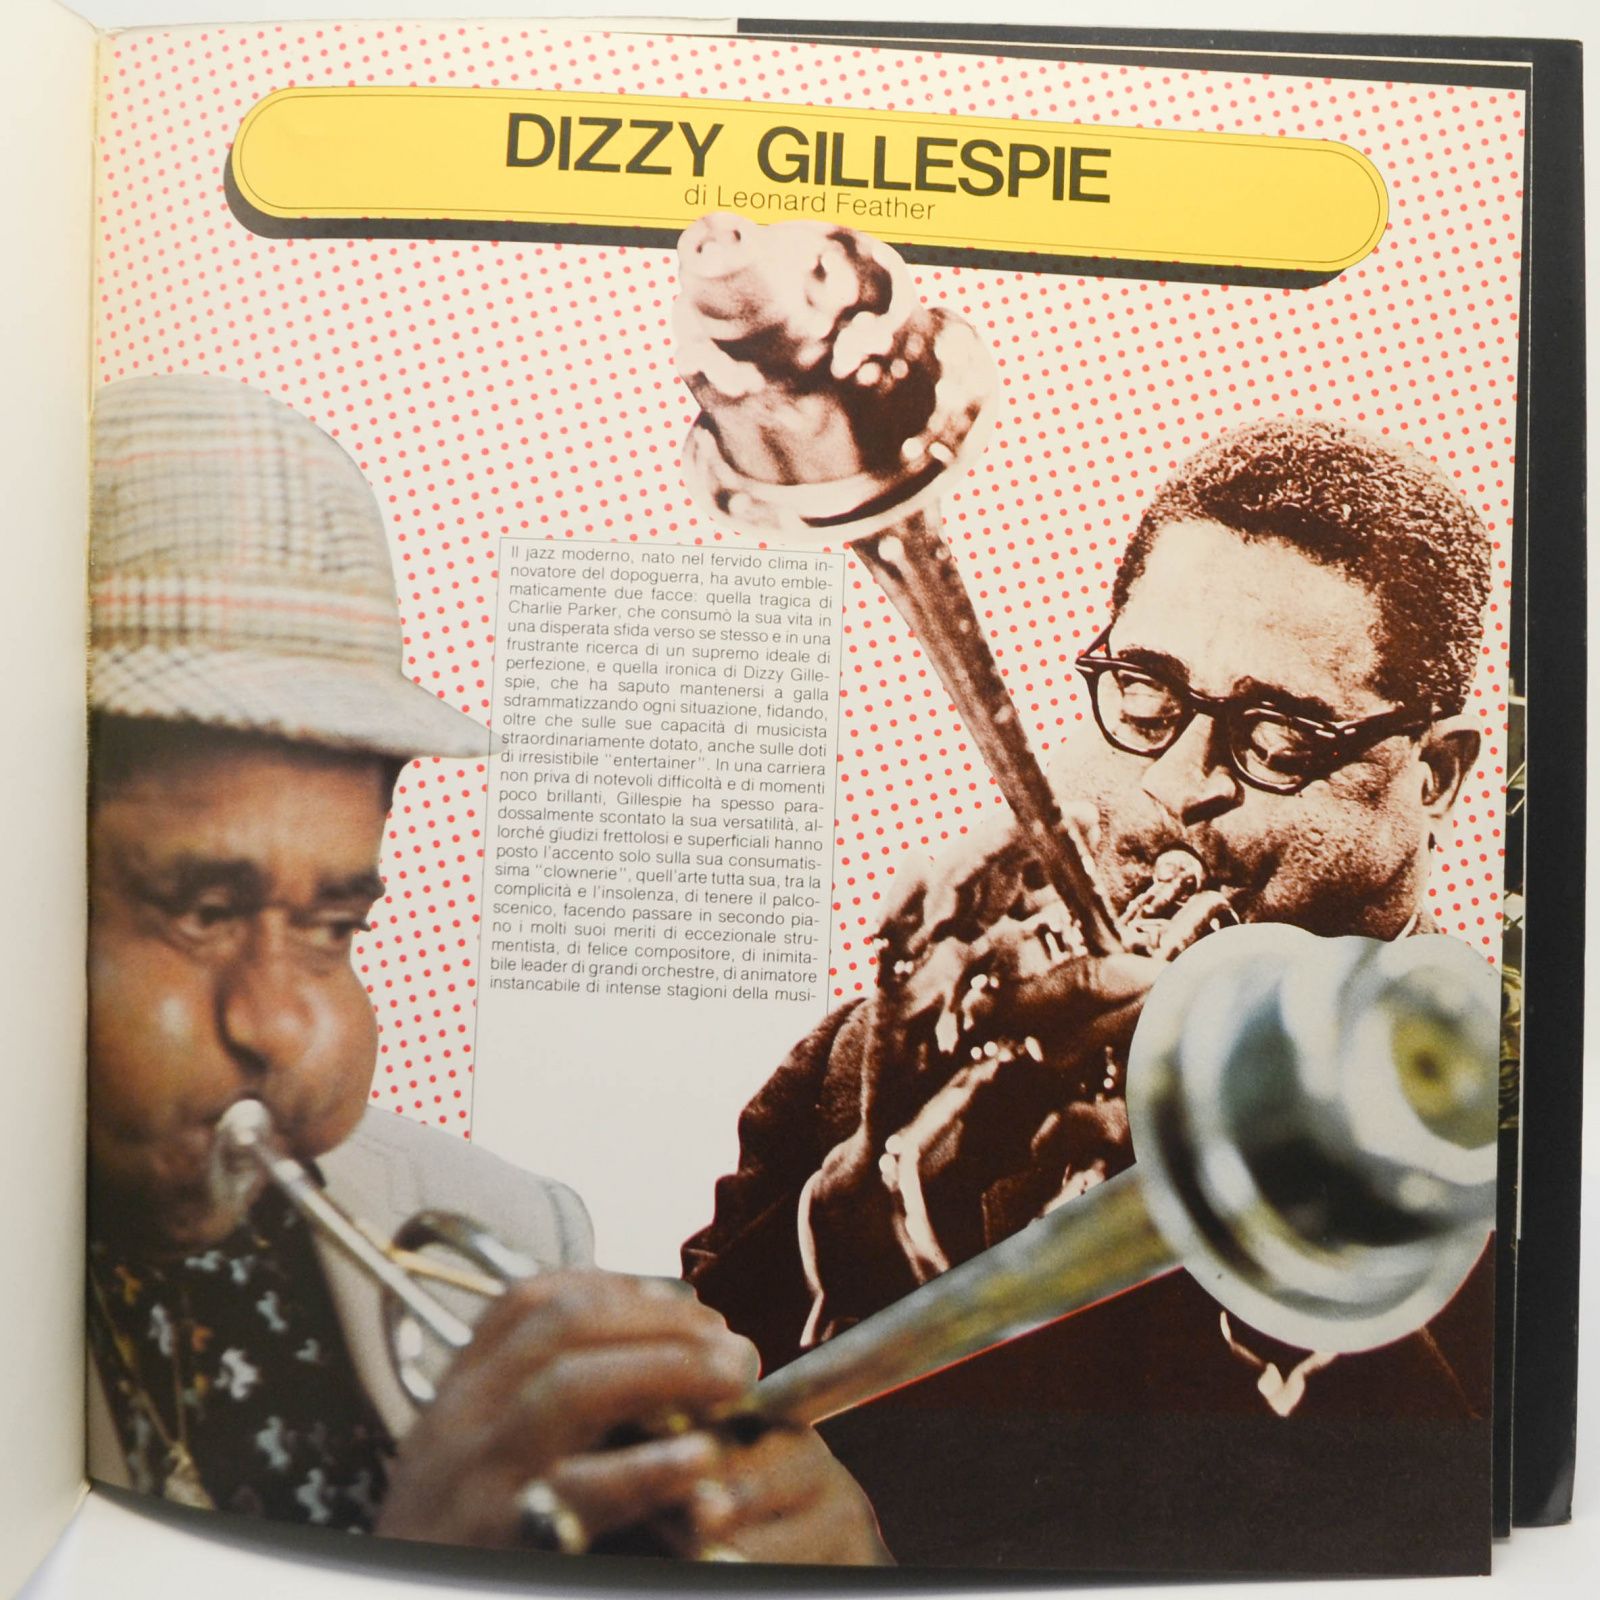 Dizzy Gillepsie — Dizzy Gillespie, 1979